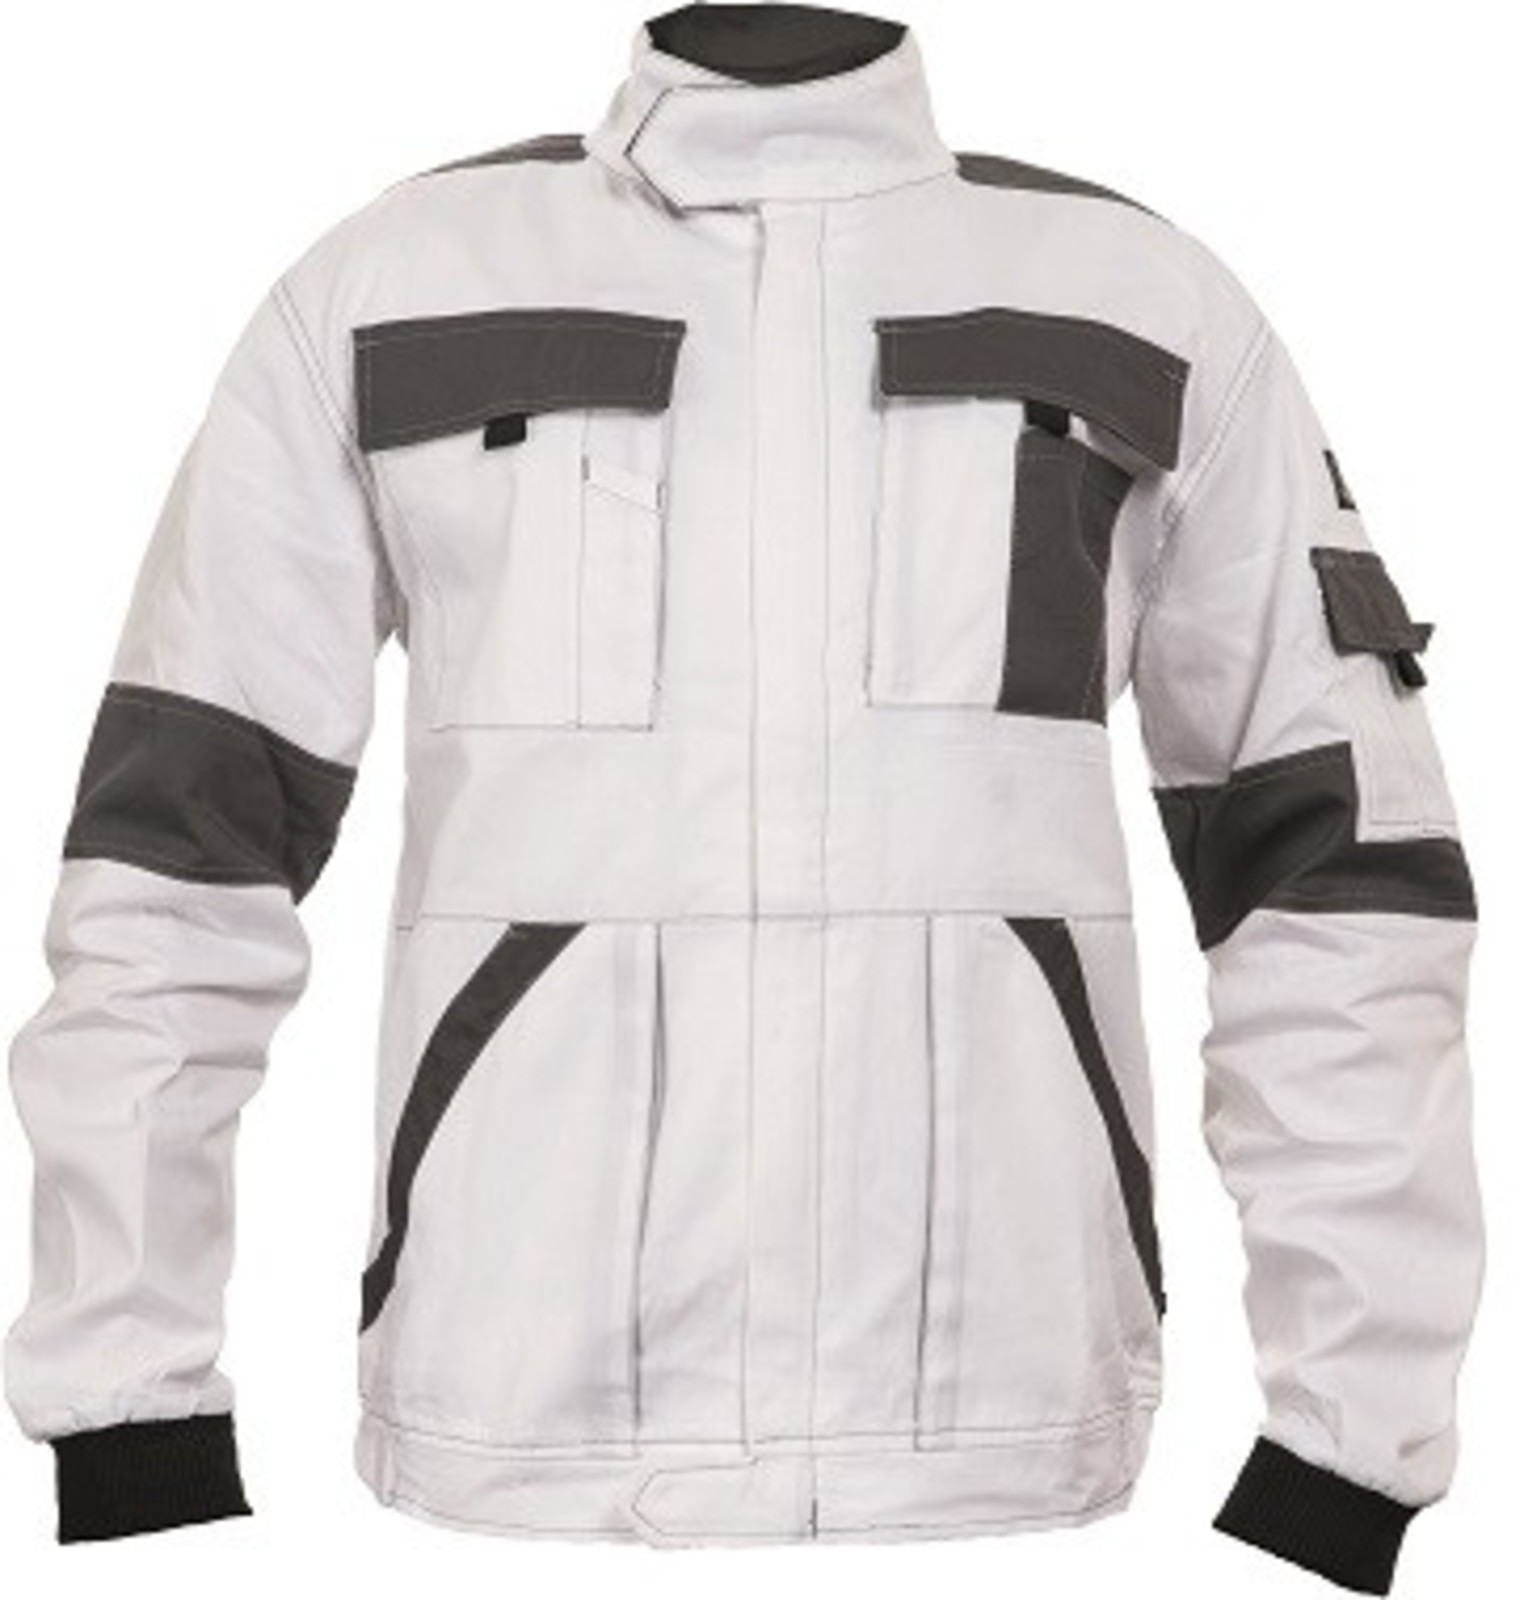 Tenšia bavlnená montérková bunda Max Summer  - veľkosť: 58, farba: biela/sivá